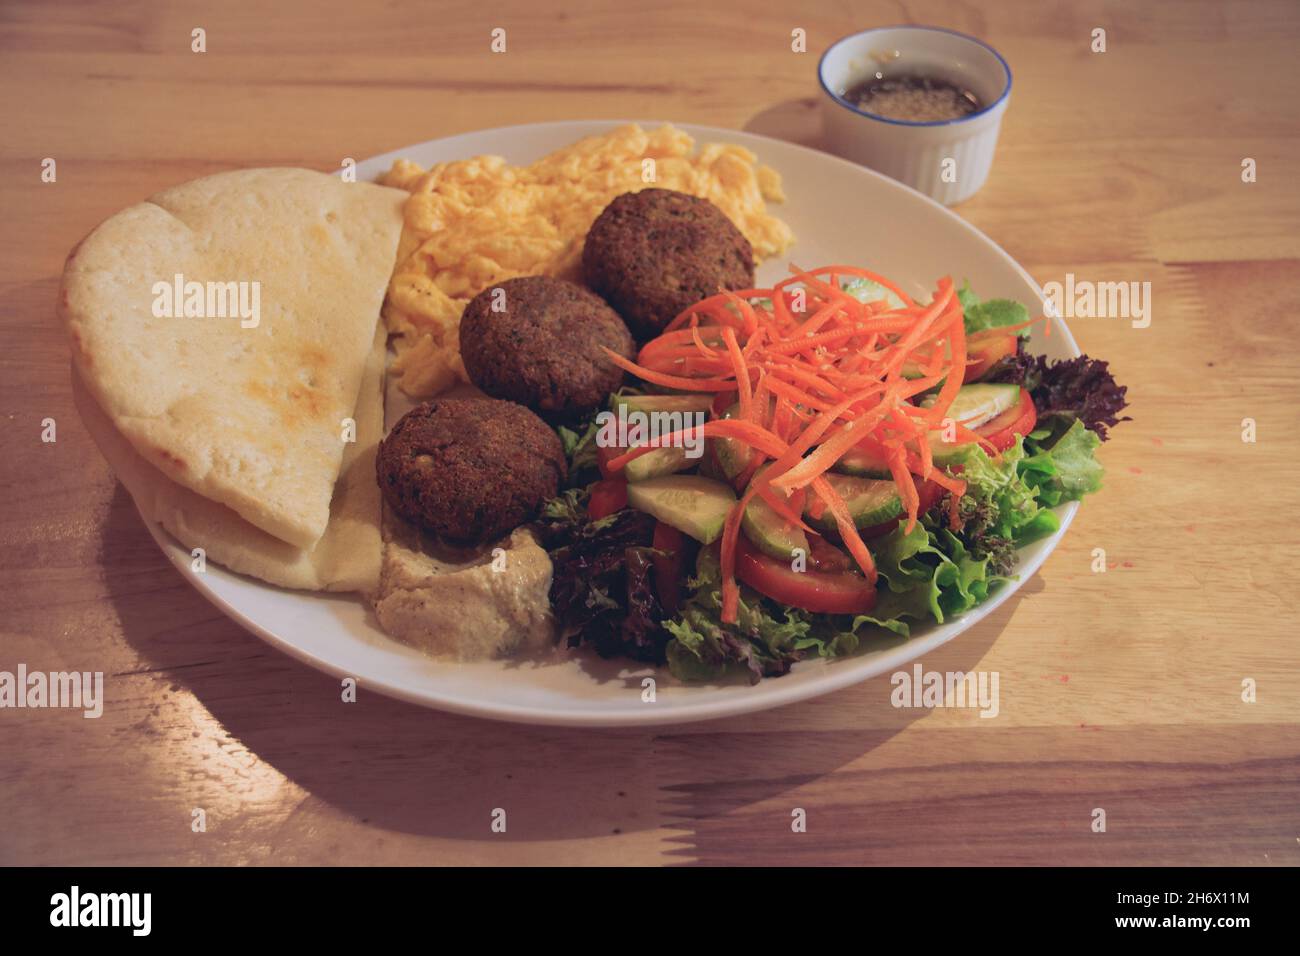 Pita pane, falafel, hummus, insalata e uova strapazzate per una sana e moderna colazione medio-orientale Foto Stock